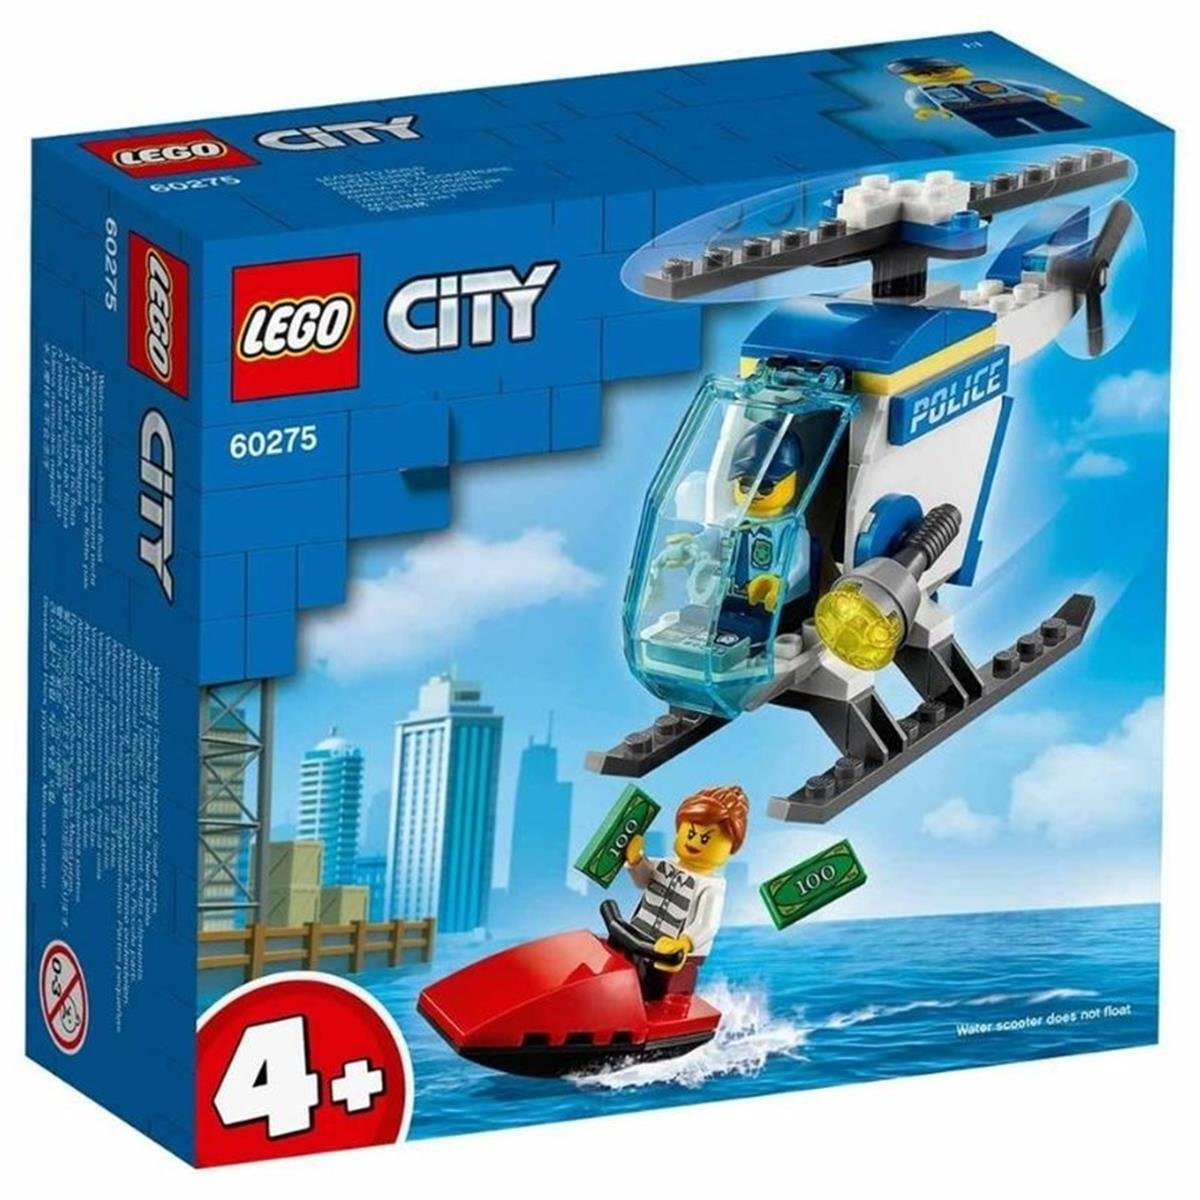 Lego City Polis Helikopteri - Oscar Eğitim Araçları